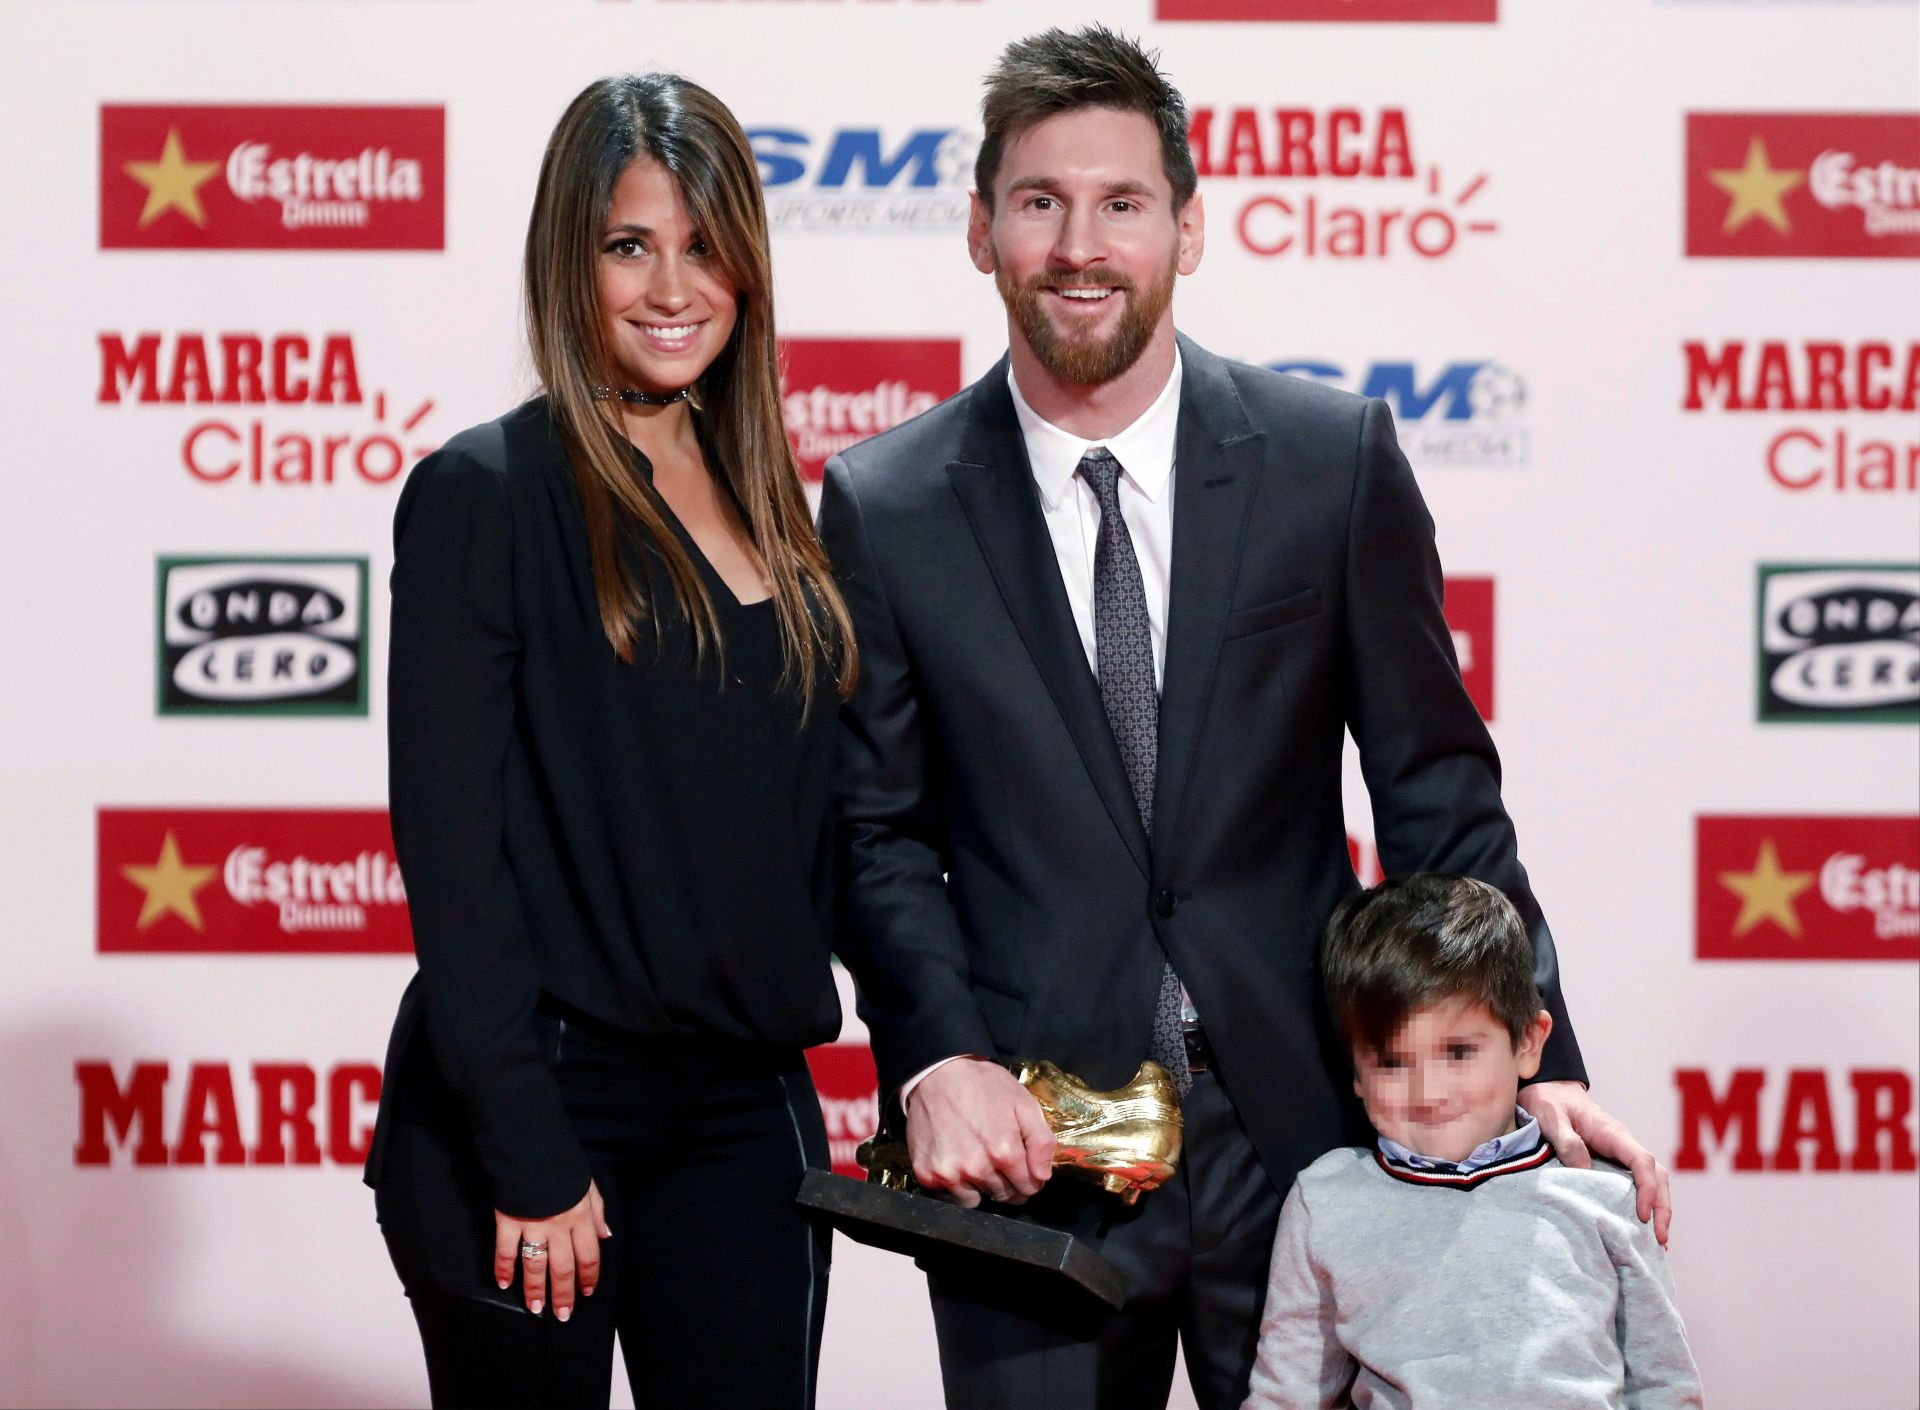 El delantero argentino del FC Barcelona, Lionel Messi, posa junto a su esposa Antonella Roccuzzo y su hijo Thiago